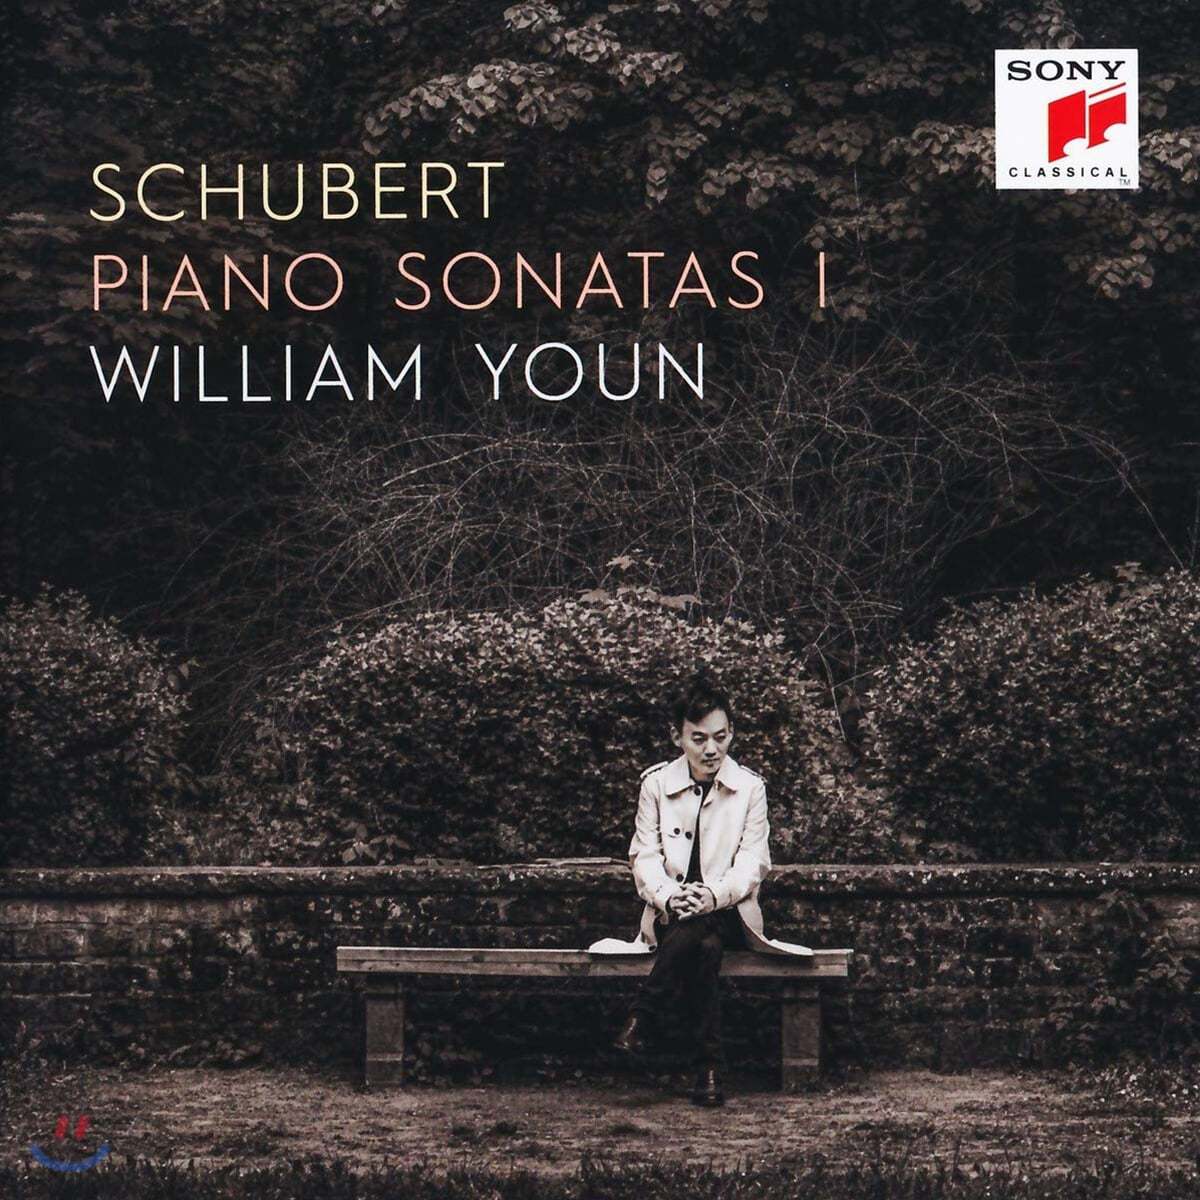 윤홍천 (William Youn) - 슈베르트: 피아노 소나타 1집 (Schubert: Piano Sonatas I)